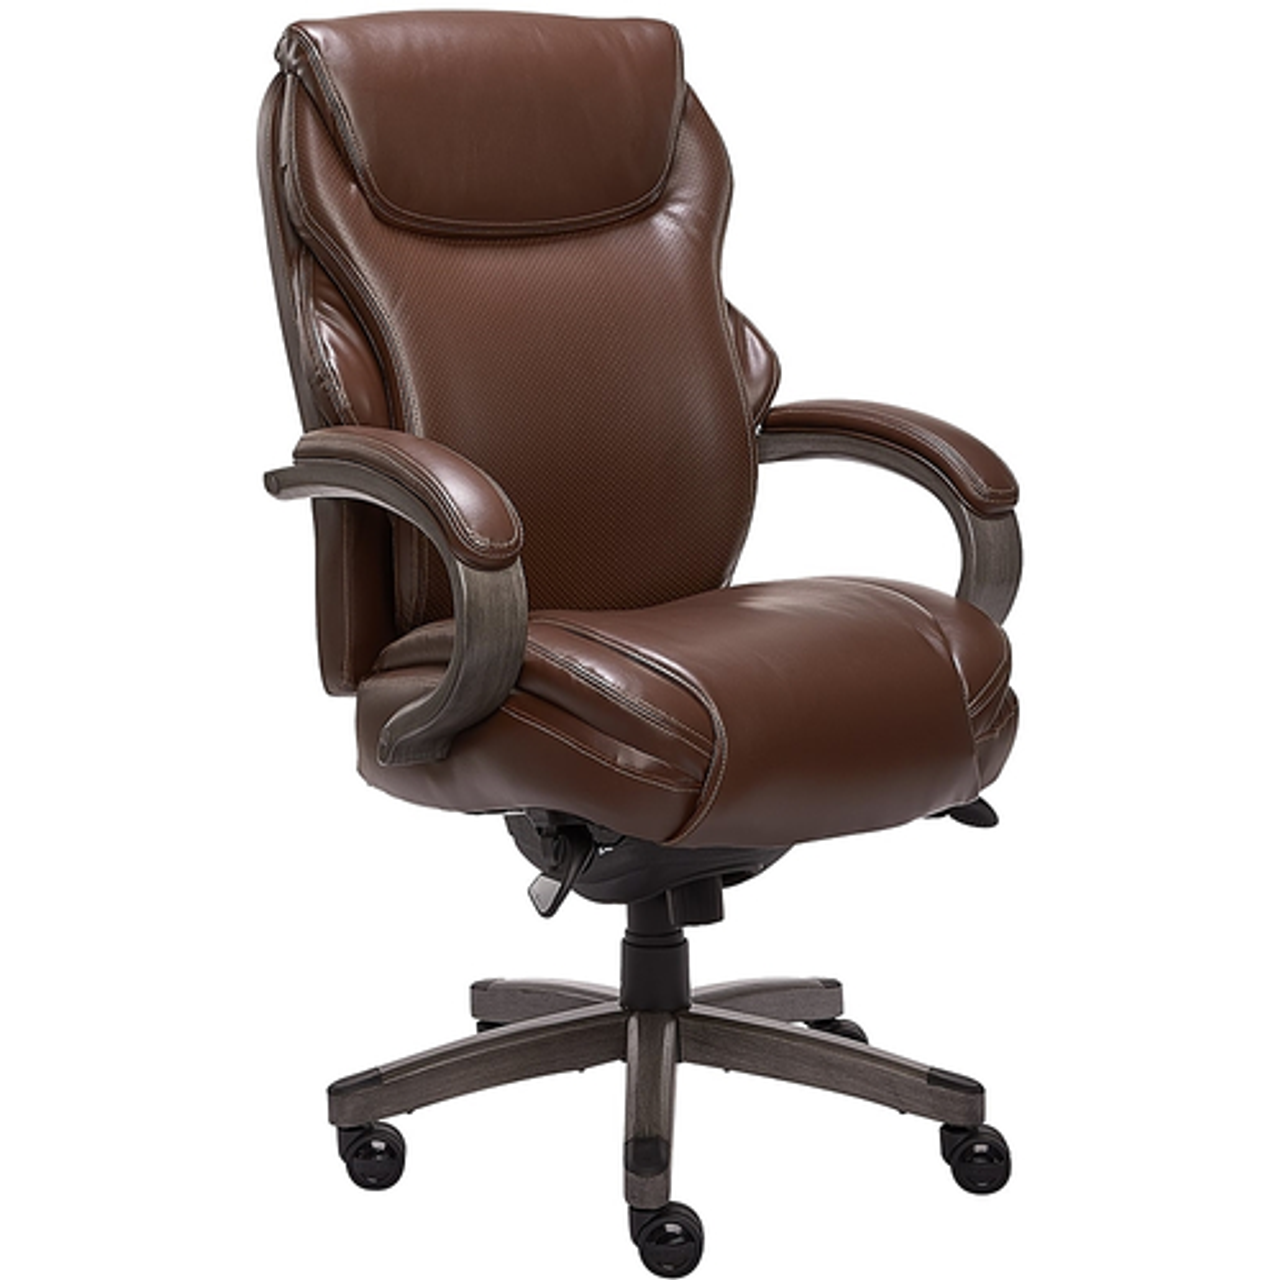 La-Z-Boy - Premium Hyland Executive Office Chair - Gray/Brown